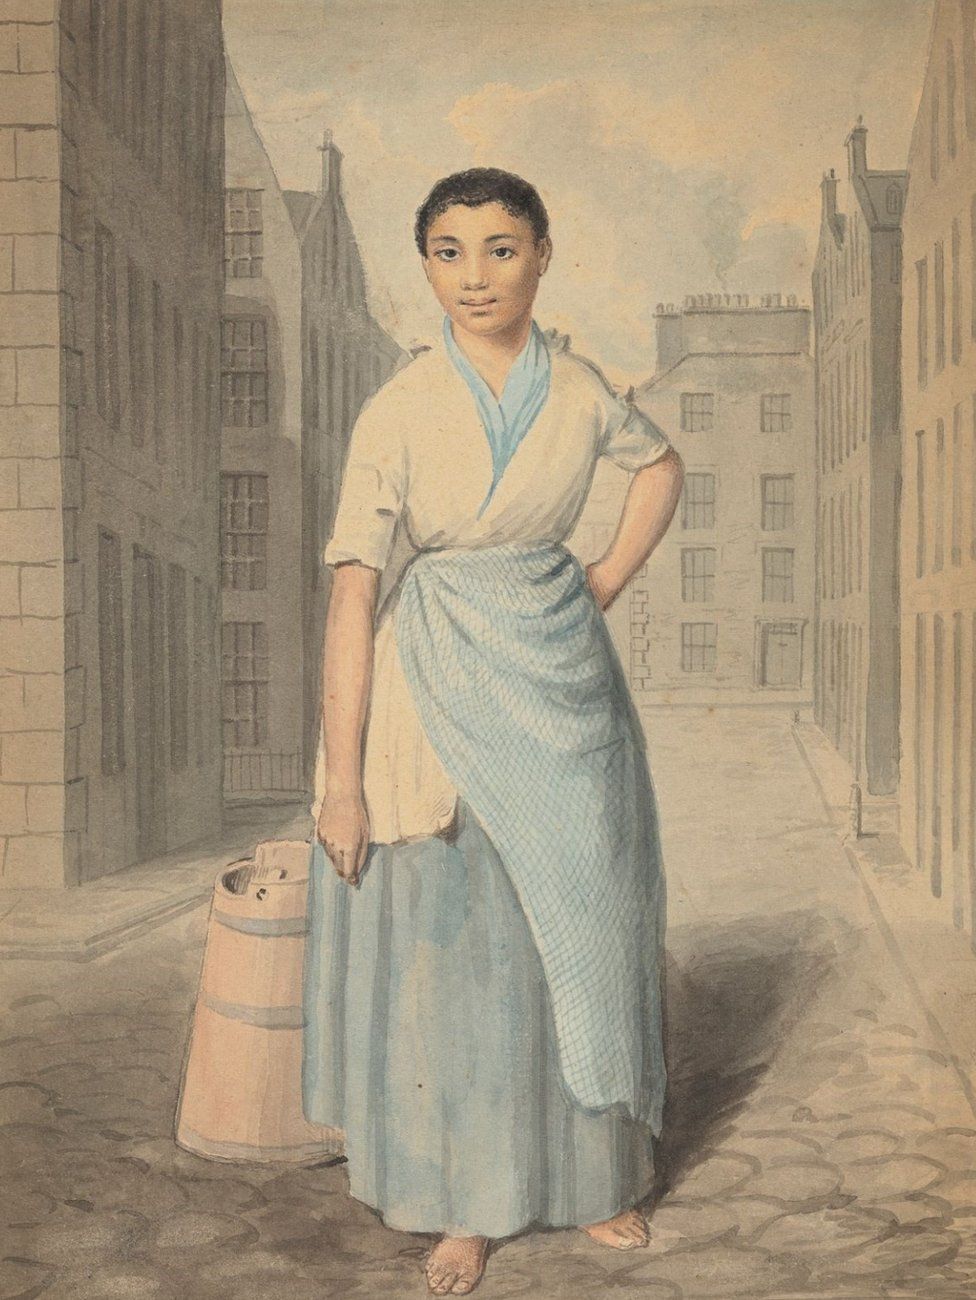 O galerie britanică a achiziţionat lucrarea cunoscută ca fiind cea mai veche ilustrare a unei femei de culoare creată de un artist scoţian